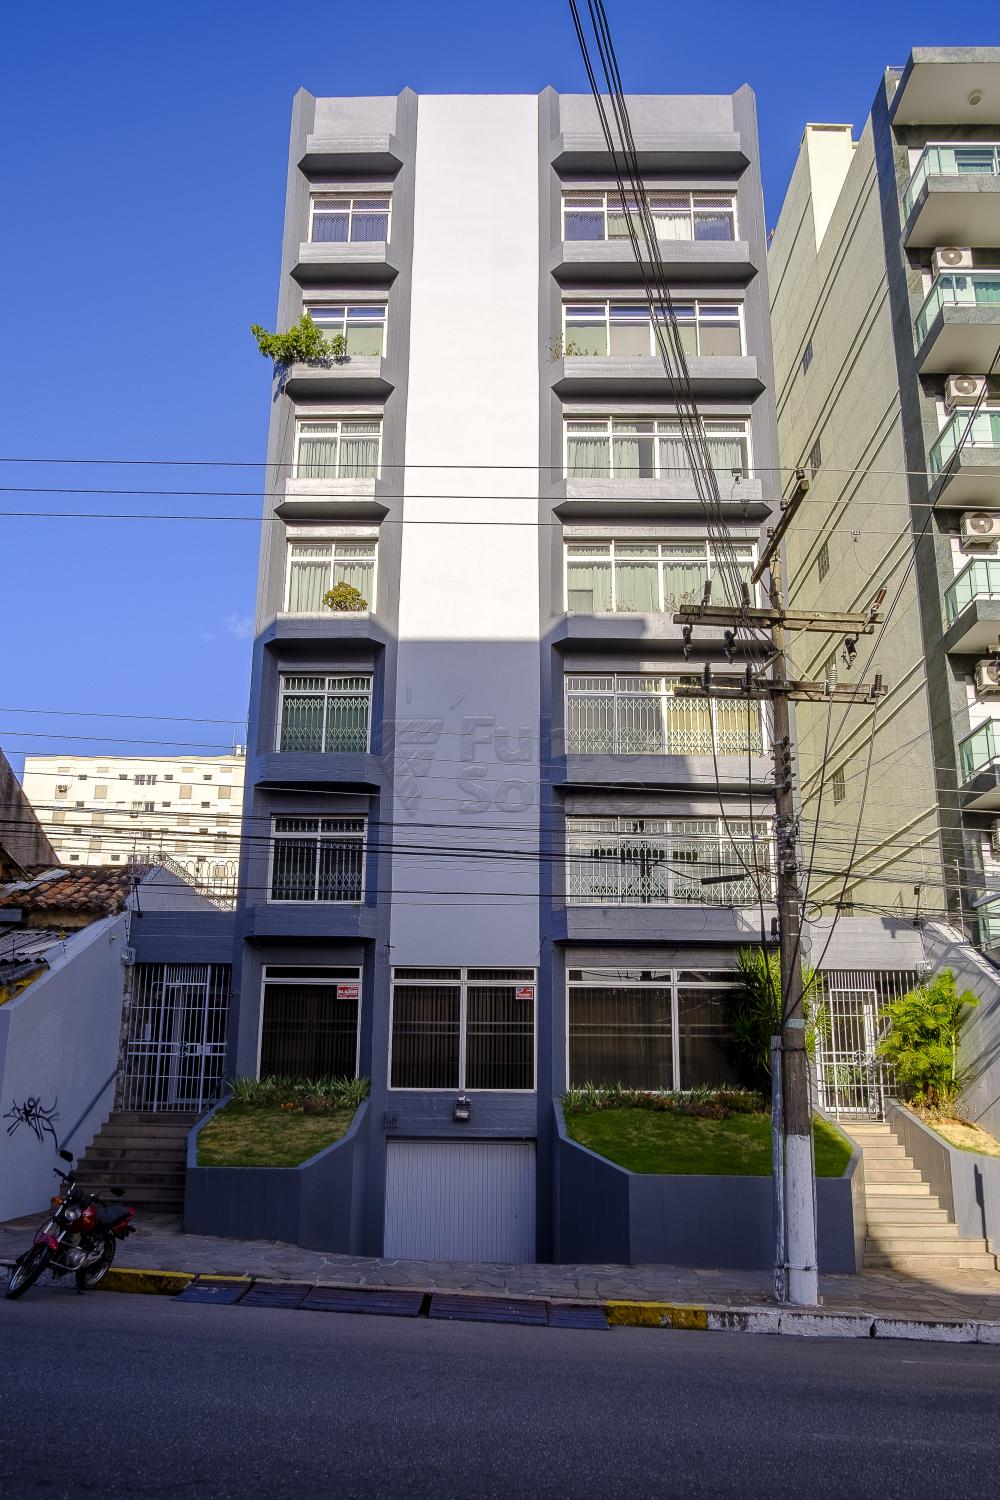 Pelotas Centro Apartamento Venda R$1.200.000,00 Condominio R$1.200,00 4 Dormitorios 2 Vagas Area construida 378.62m2